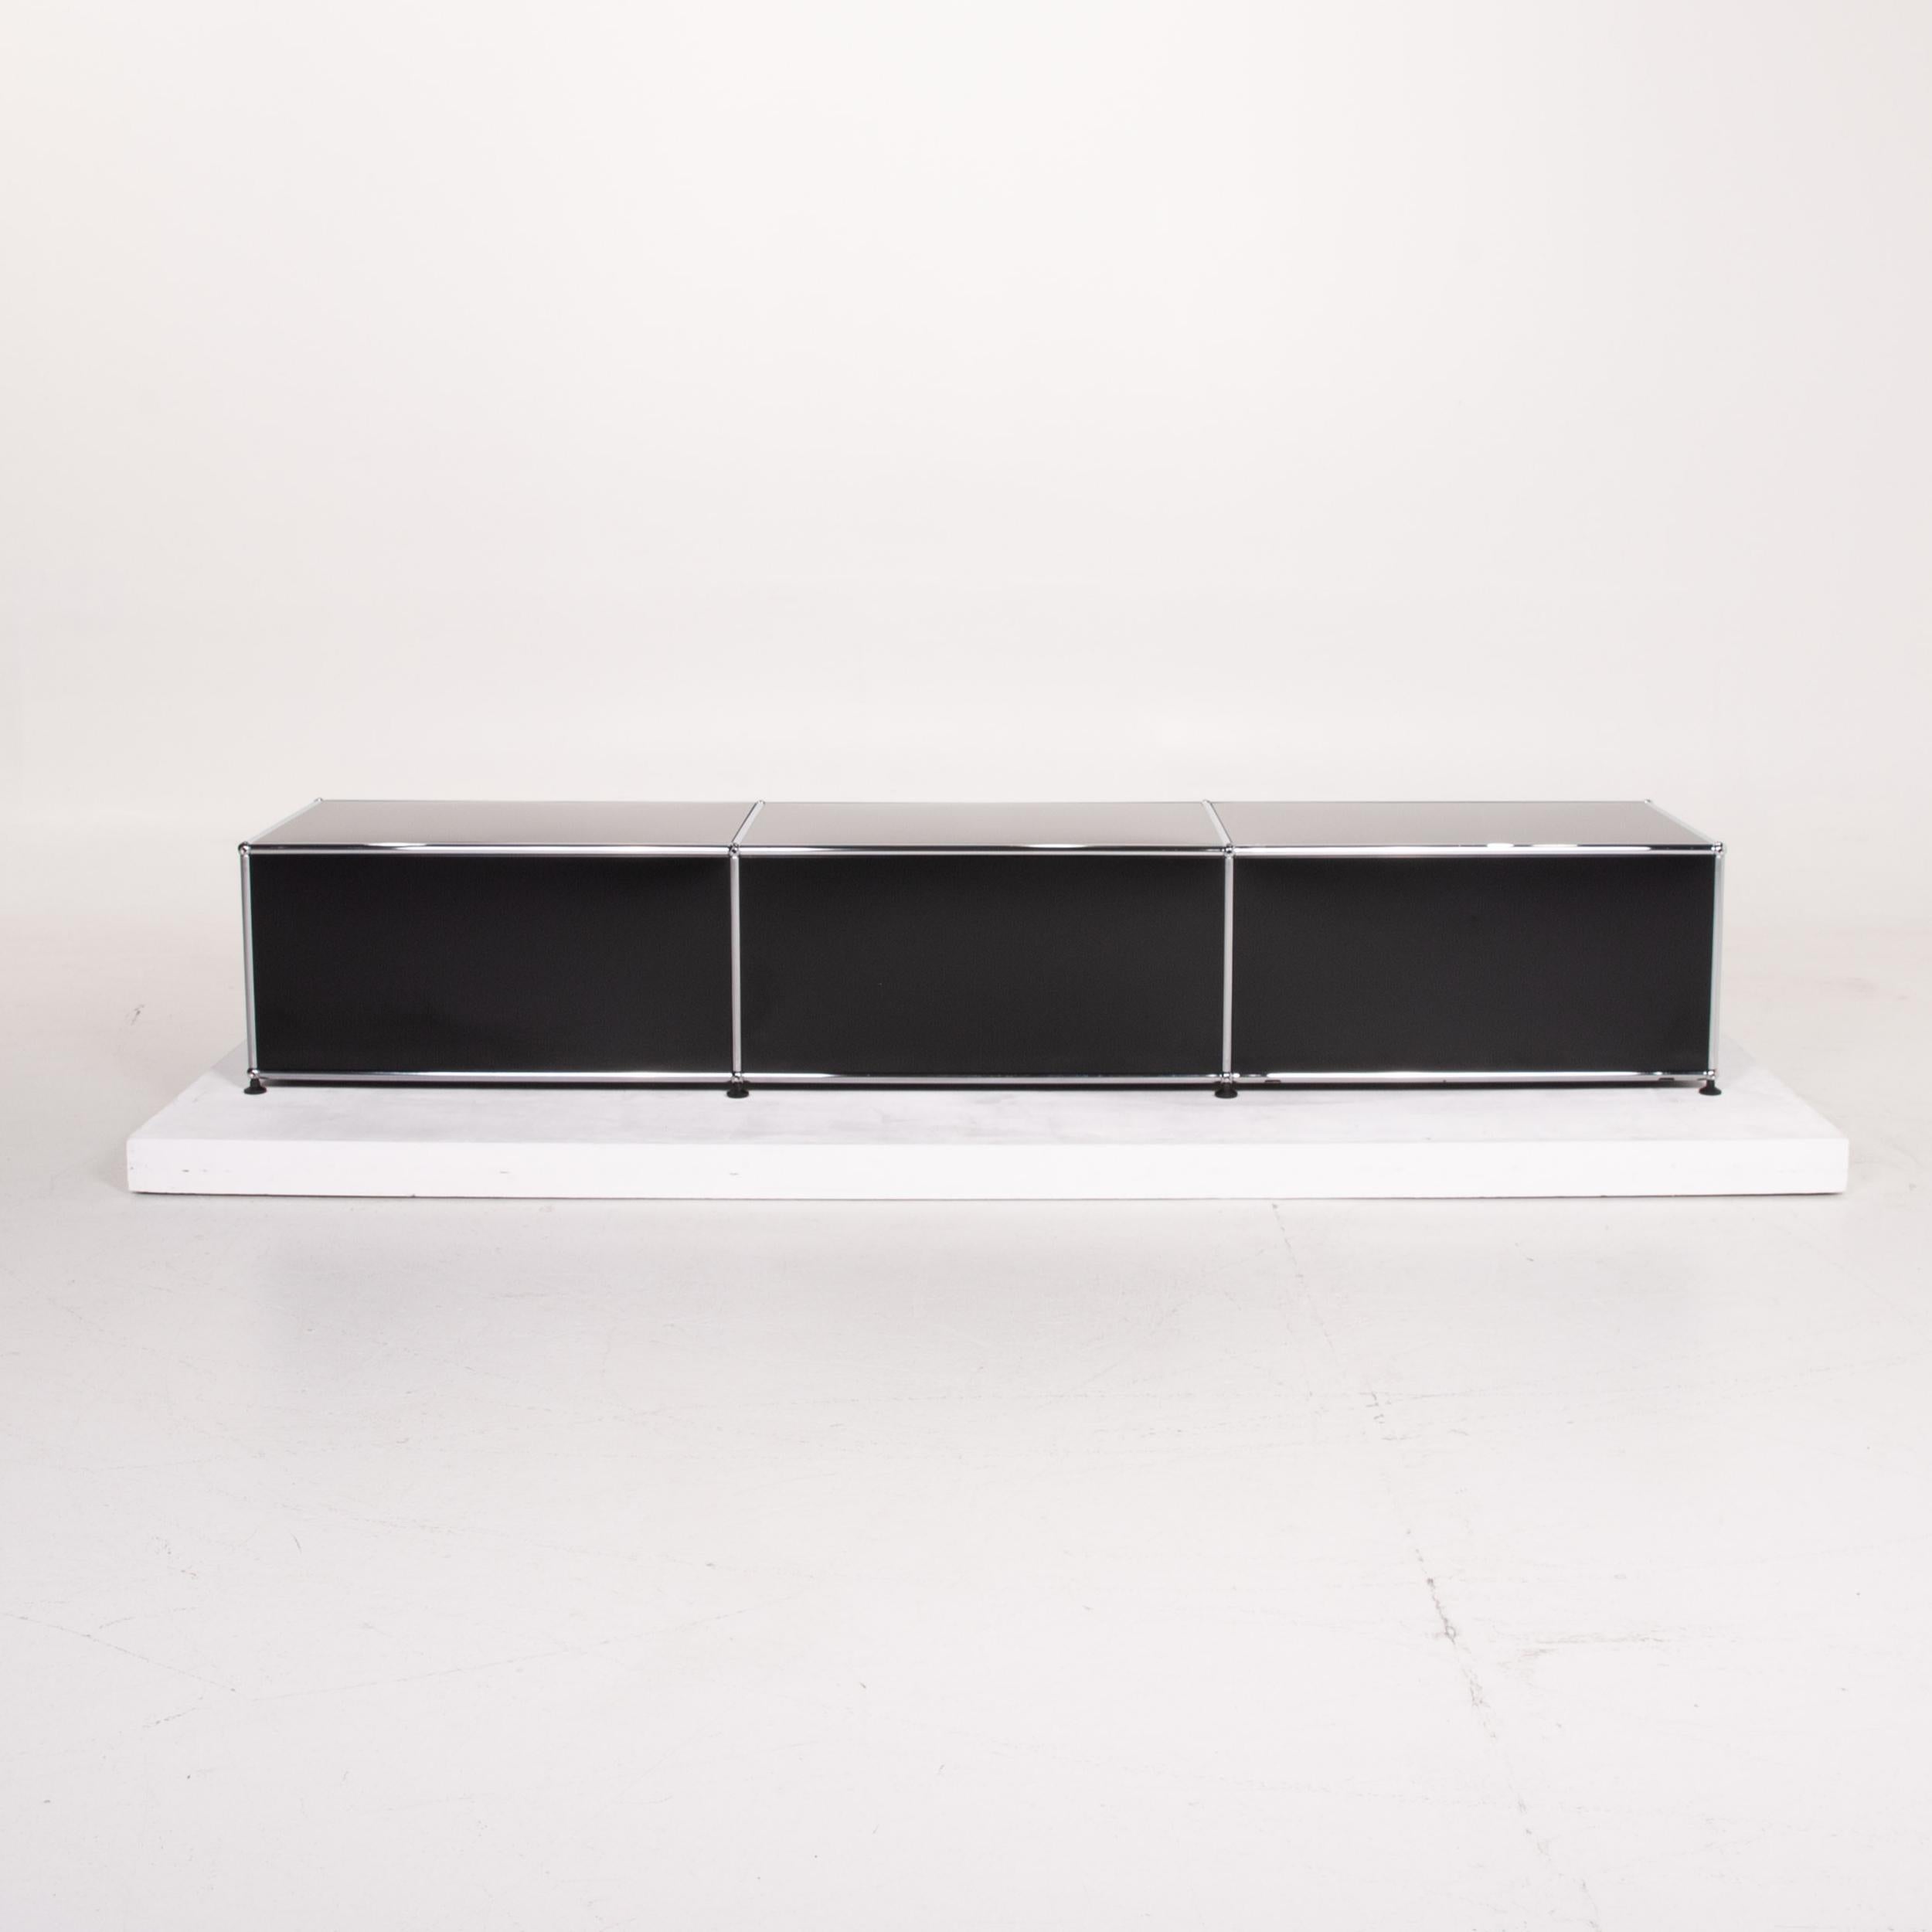 USM Haller Metal Sideboard Black Office Furniture Shelf Lowboard Modular 3